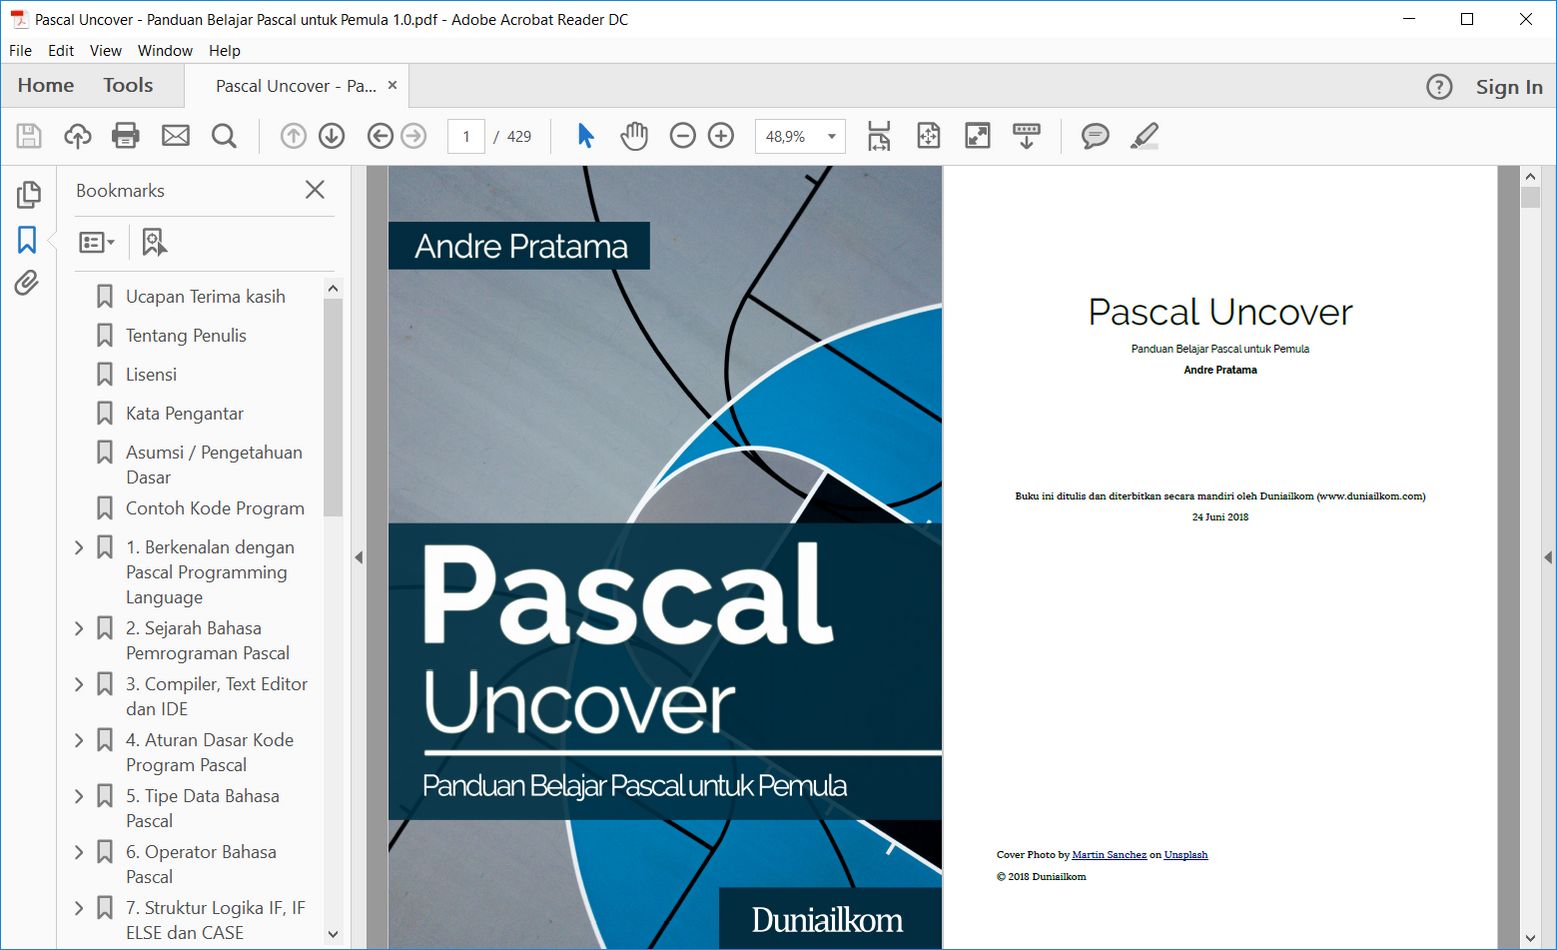 EBook Pascal Uncover - Panduan Belajar Pascal untuk Pemula 